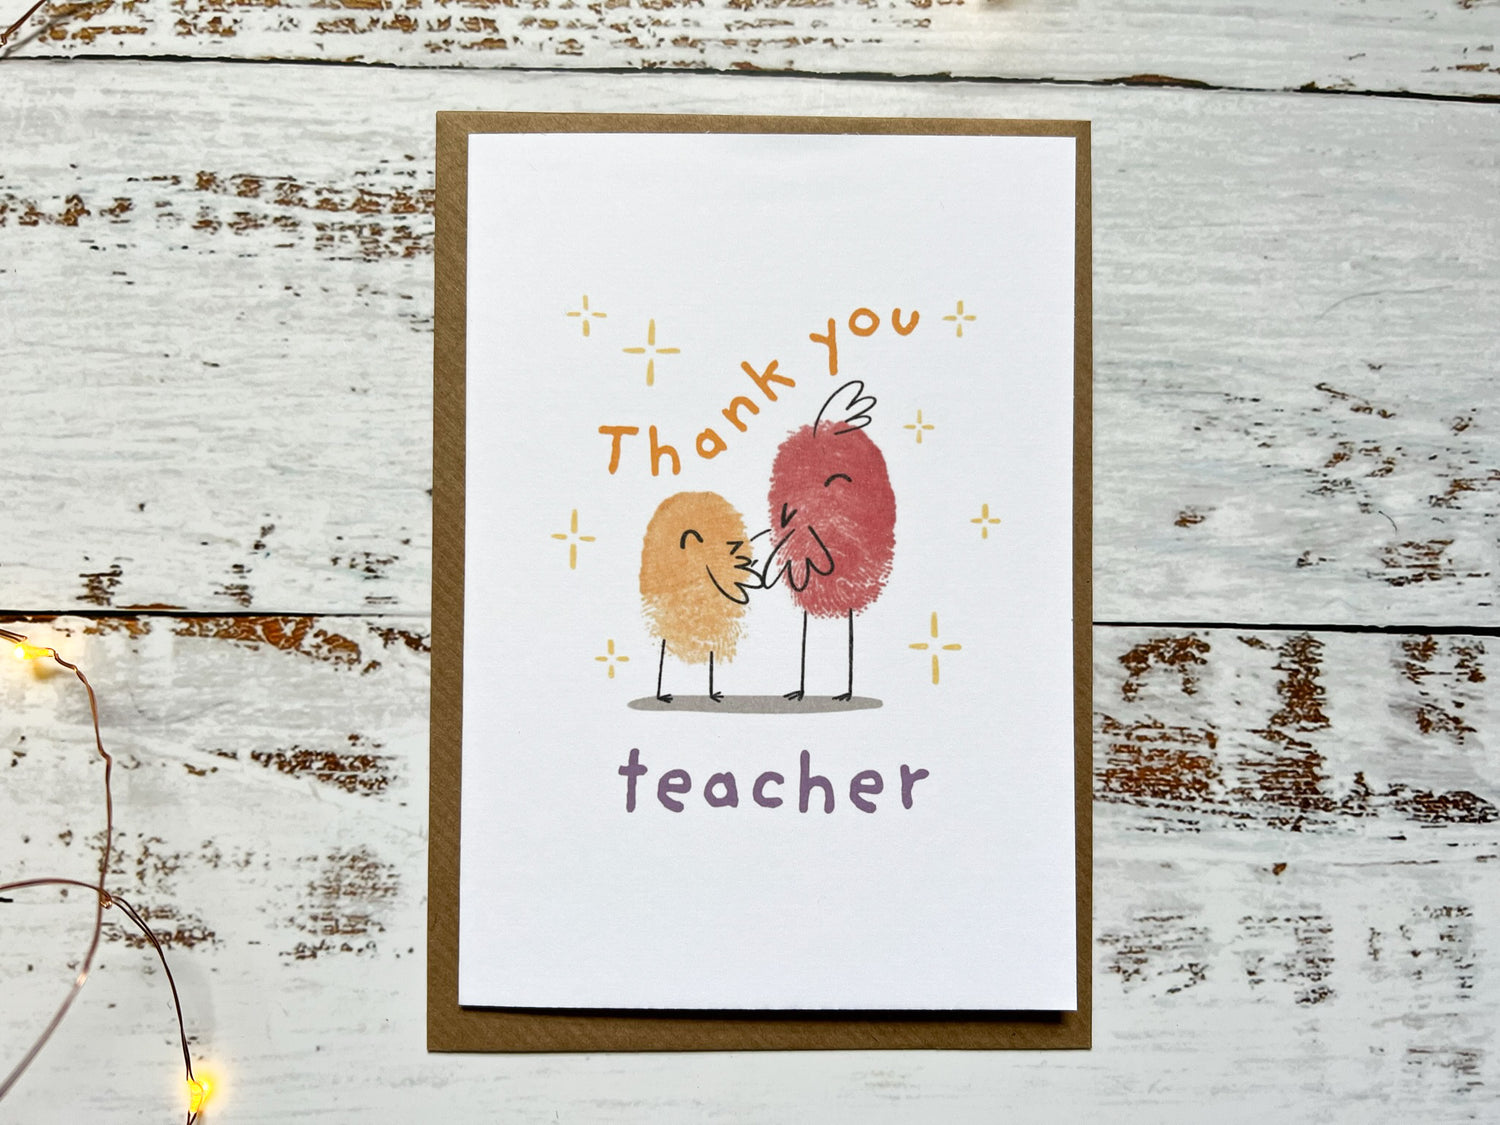 Teacher cards